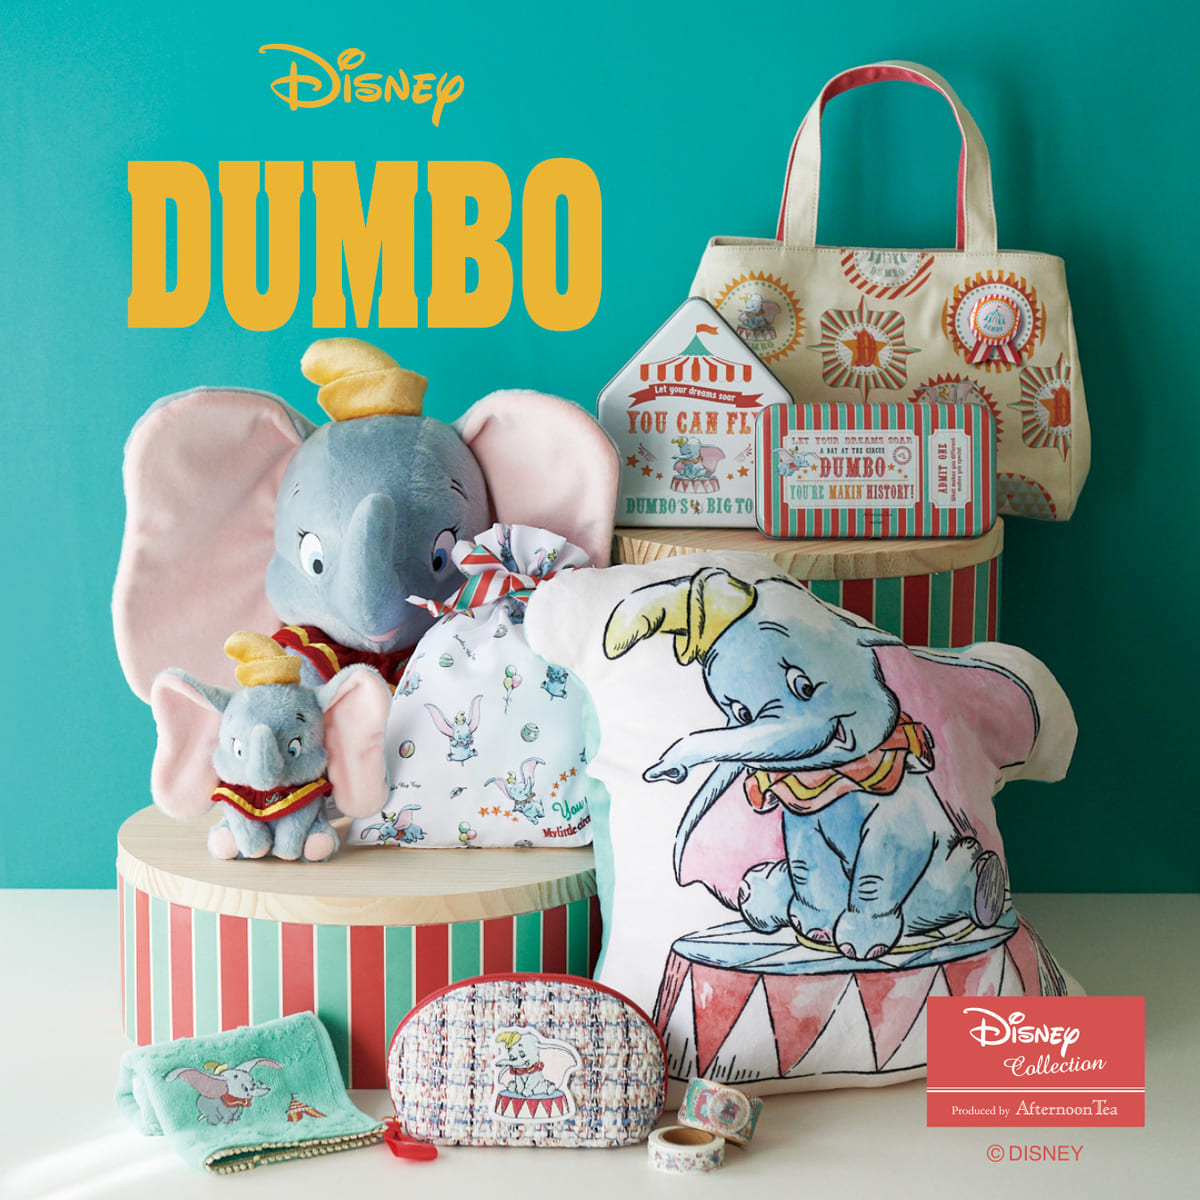 ディズニー実写映画 ダンボ 公開記念グッズ Afternoon Tea Living Disney Collection Dumbo Dtimes